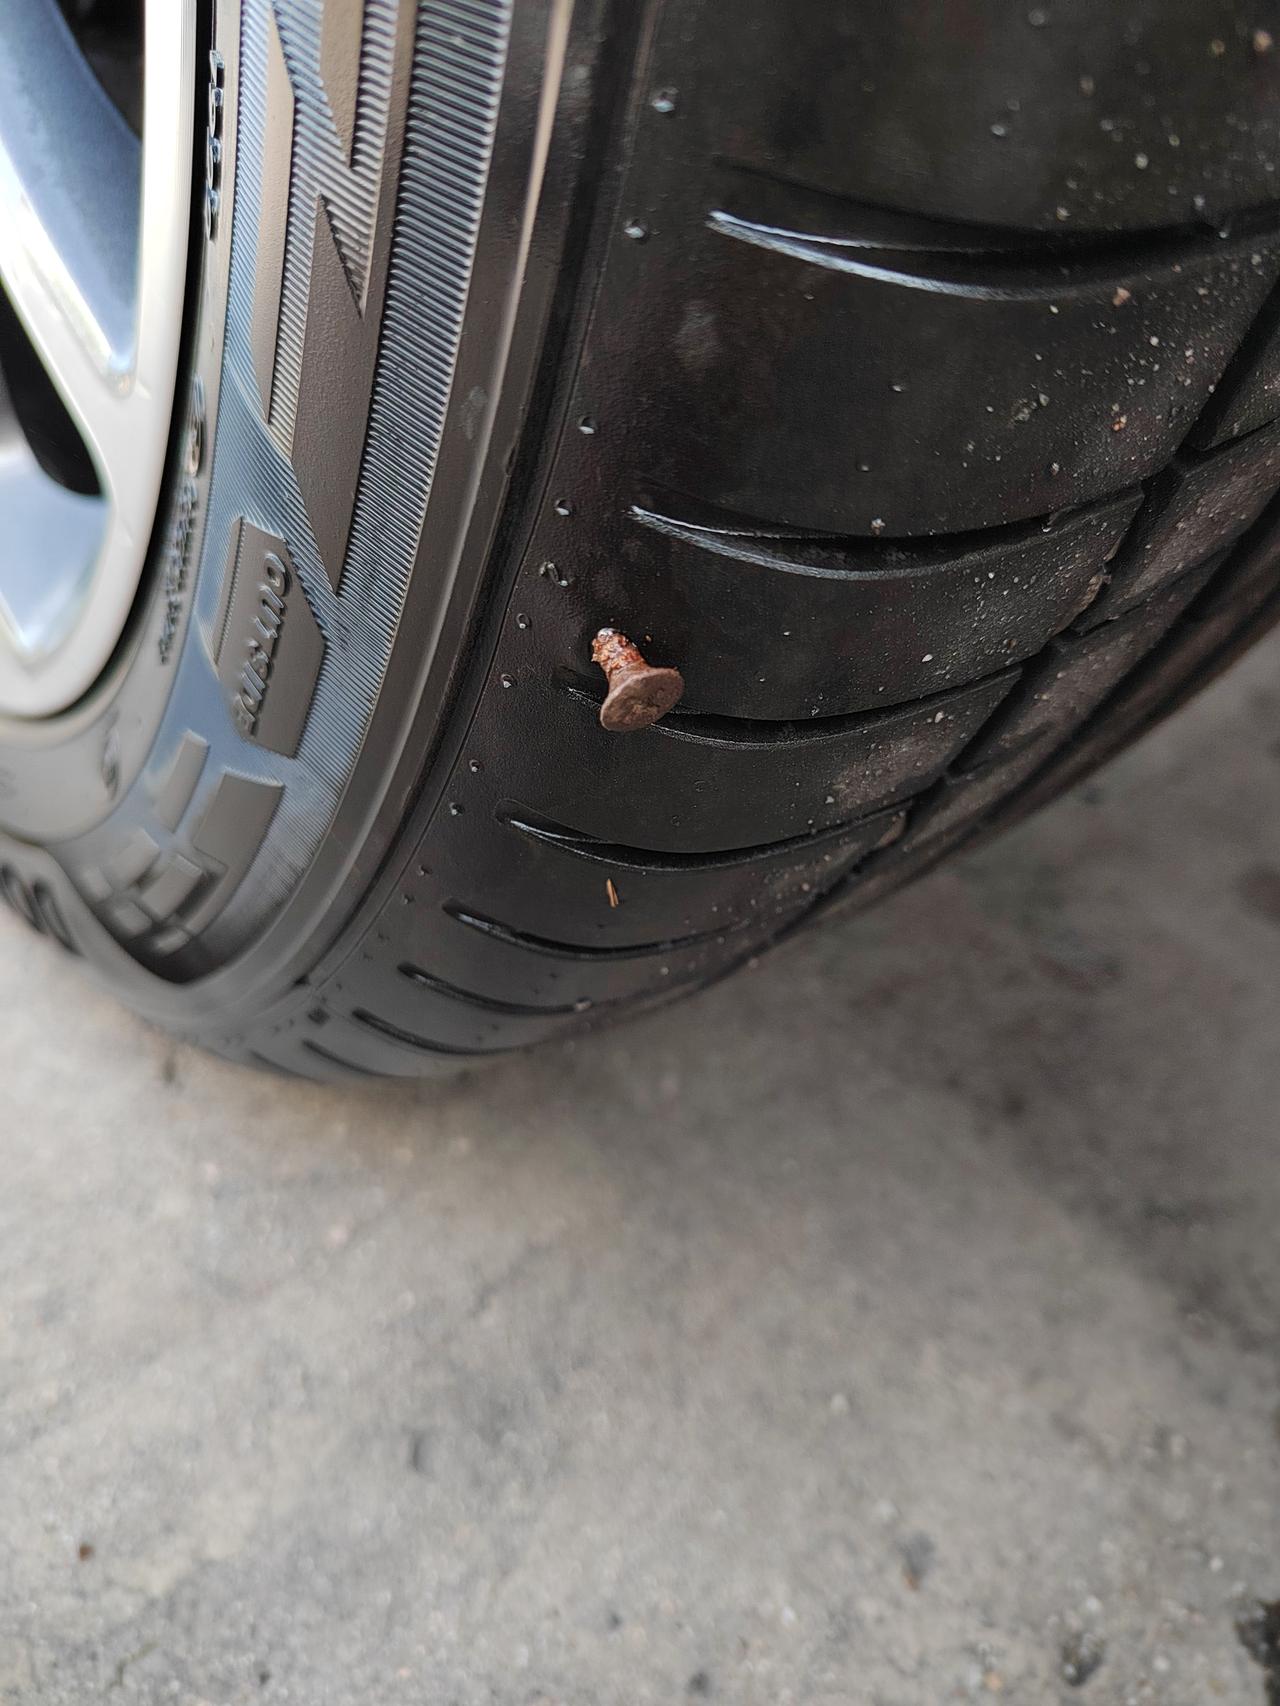 奇瑞艾瑞泽5 一个多月的新车，今天早上开门进去发现胎压报警，下来一看轮胎胎壁扎了一颗螺丝钉，问了问同事，都说这样的不能补